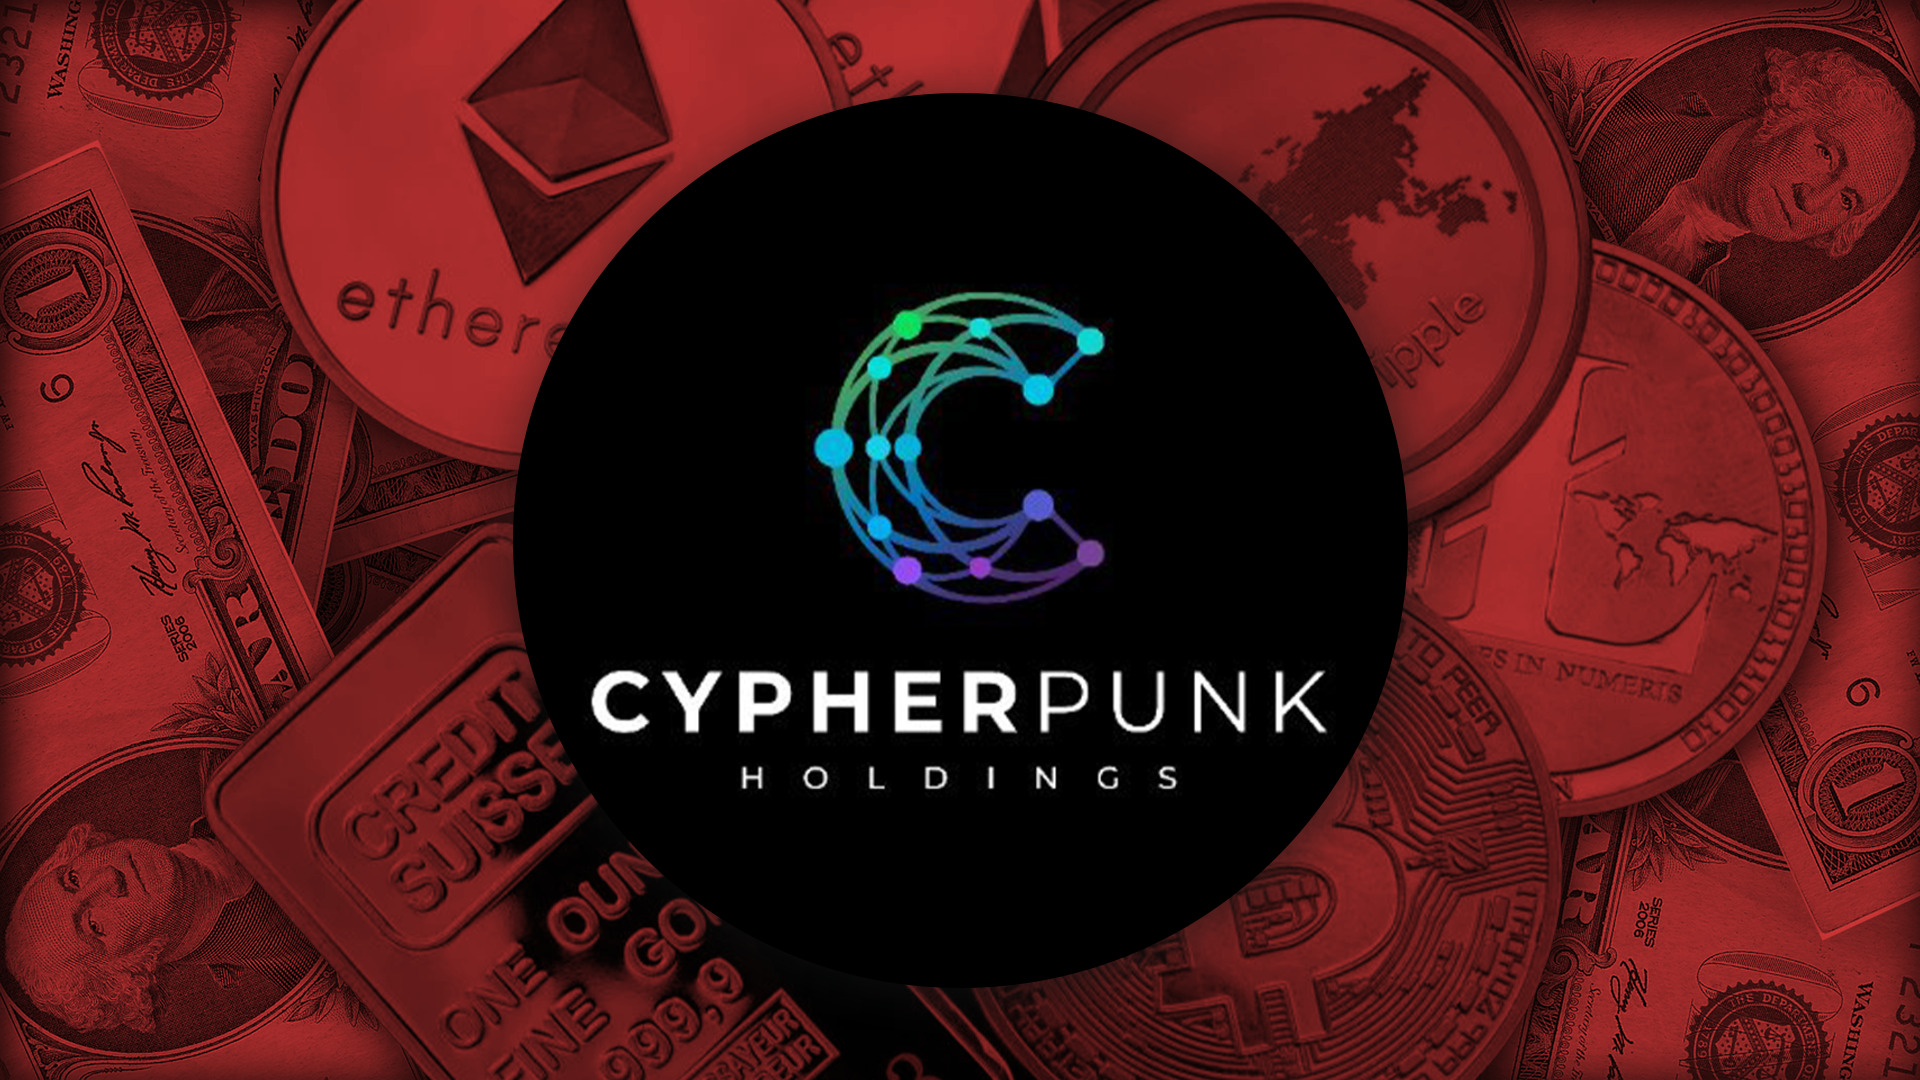 บริษัท Cypherpunk เทขาย BTC และ ETH ทั้งหมด หลังตลาดผันผวนหนัก